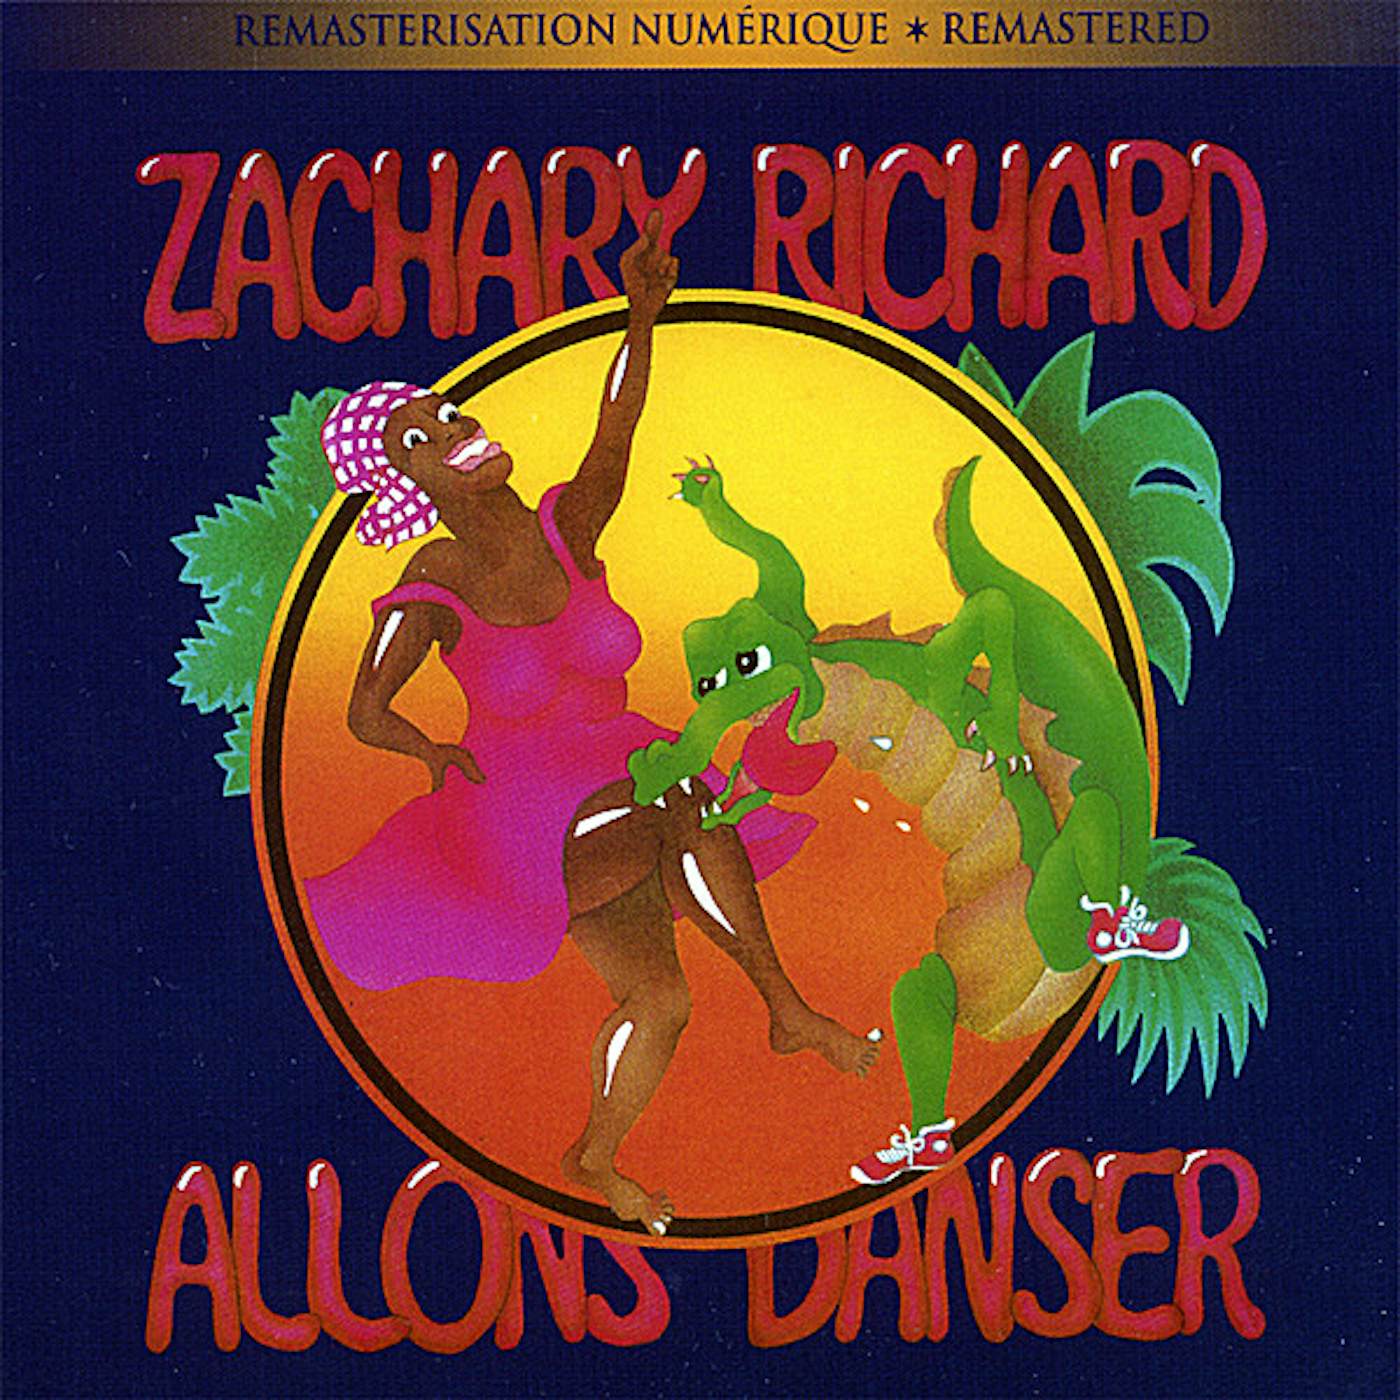 Zachary Richard ALLONS DANSER CD